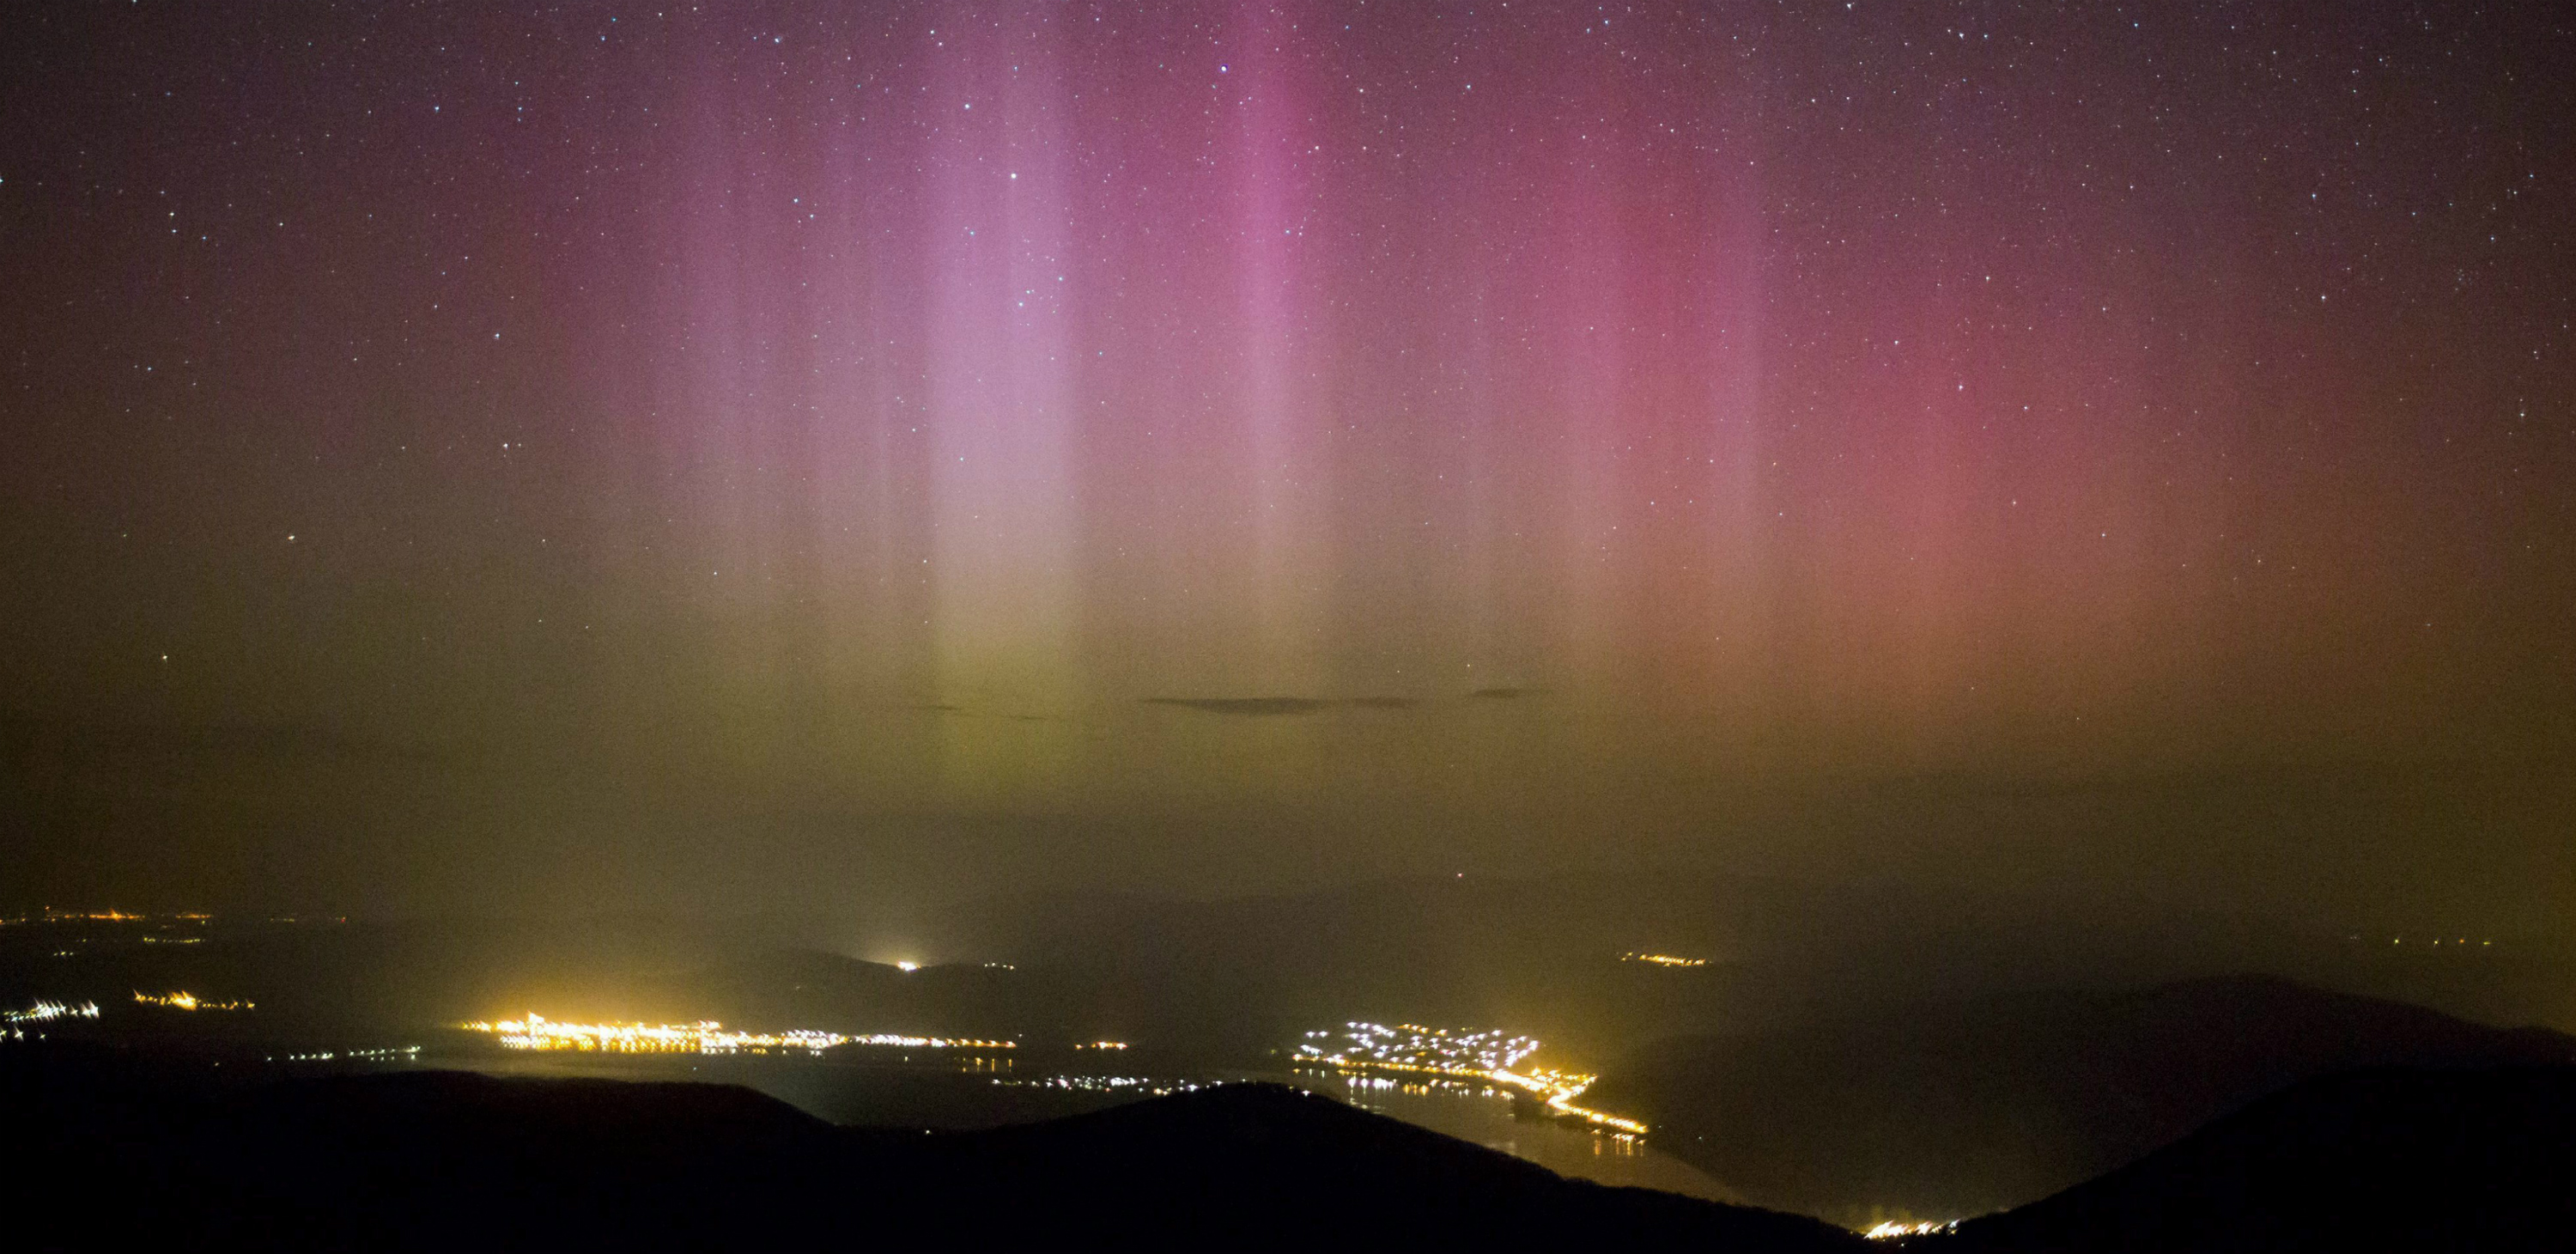 La aurora boreal se forma sobre la ciudad de Pilisszentkereszt, situada a 26 kms al norte de Budapest (Hungría. EFE/Balazs Mohai